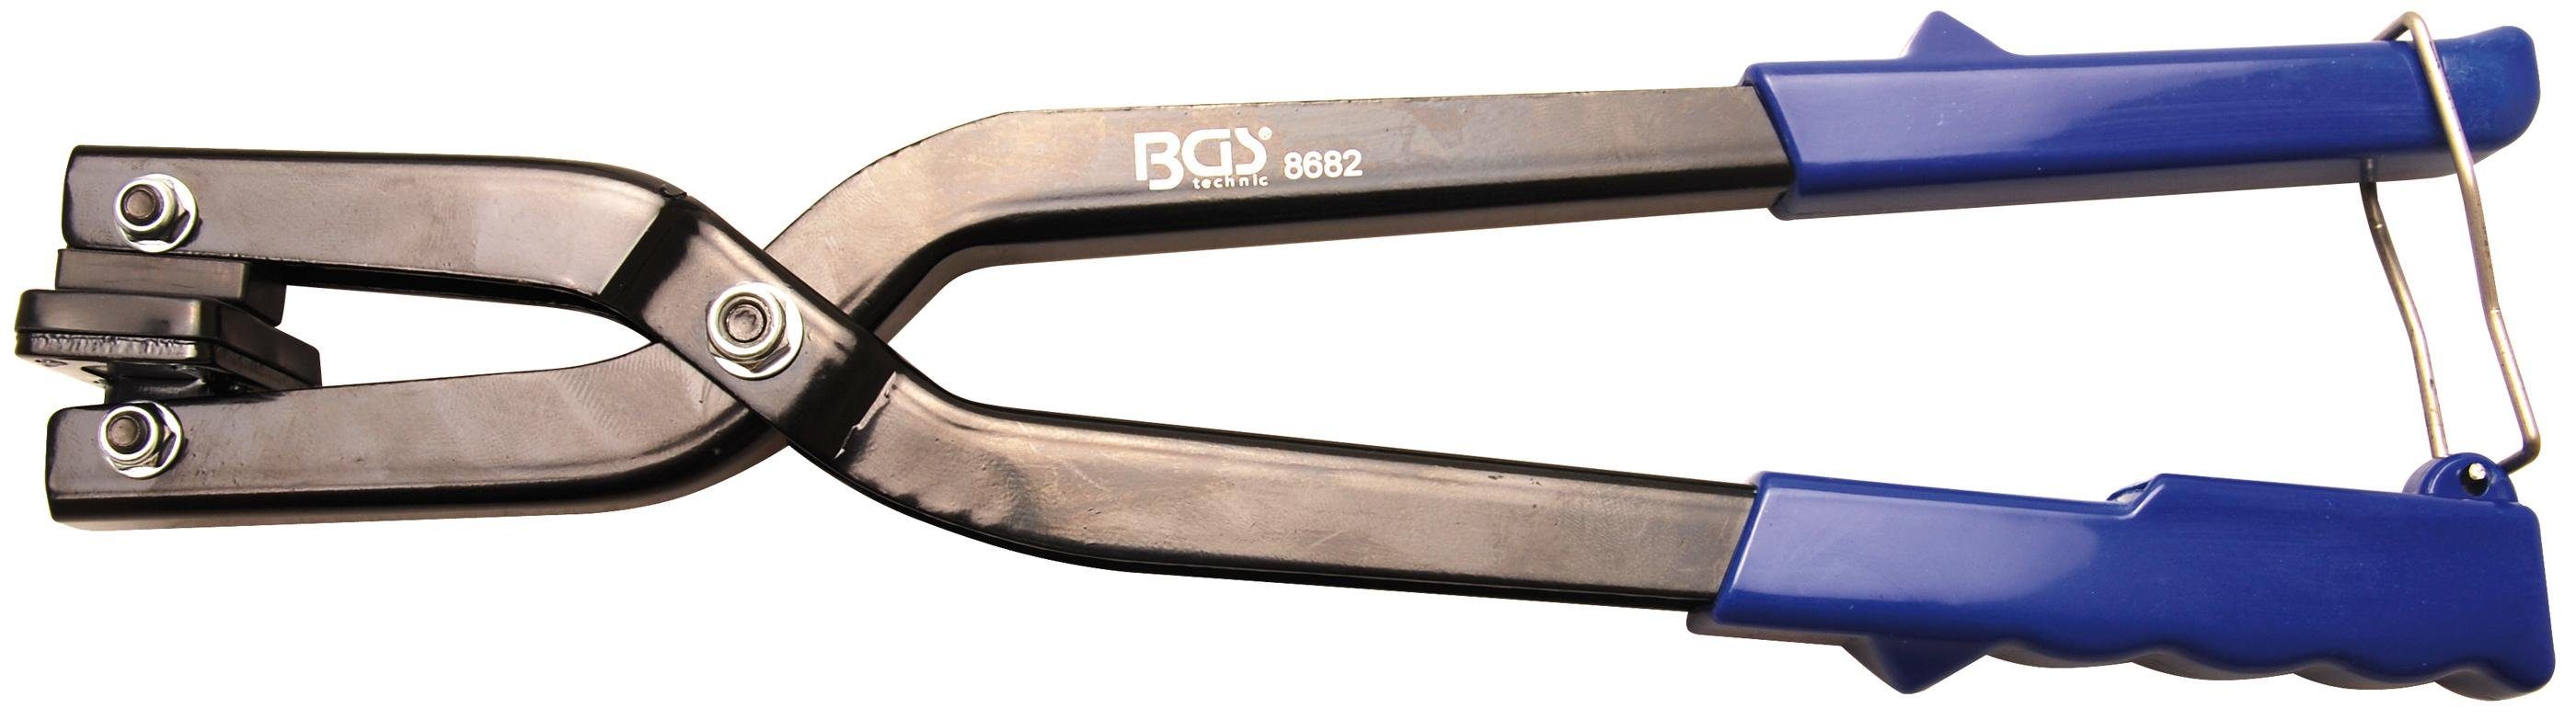 BGS technic mm Radlauf- Kotflügel-Bördelzange, Demontagewerkzeug 310 und